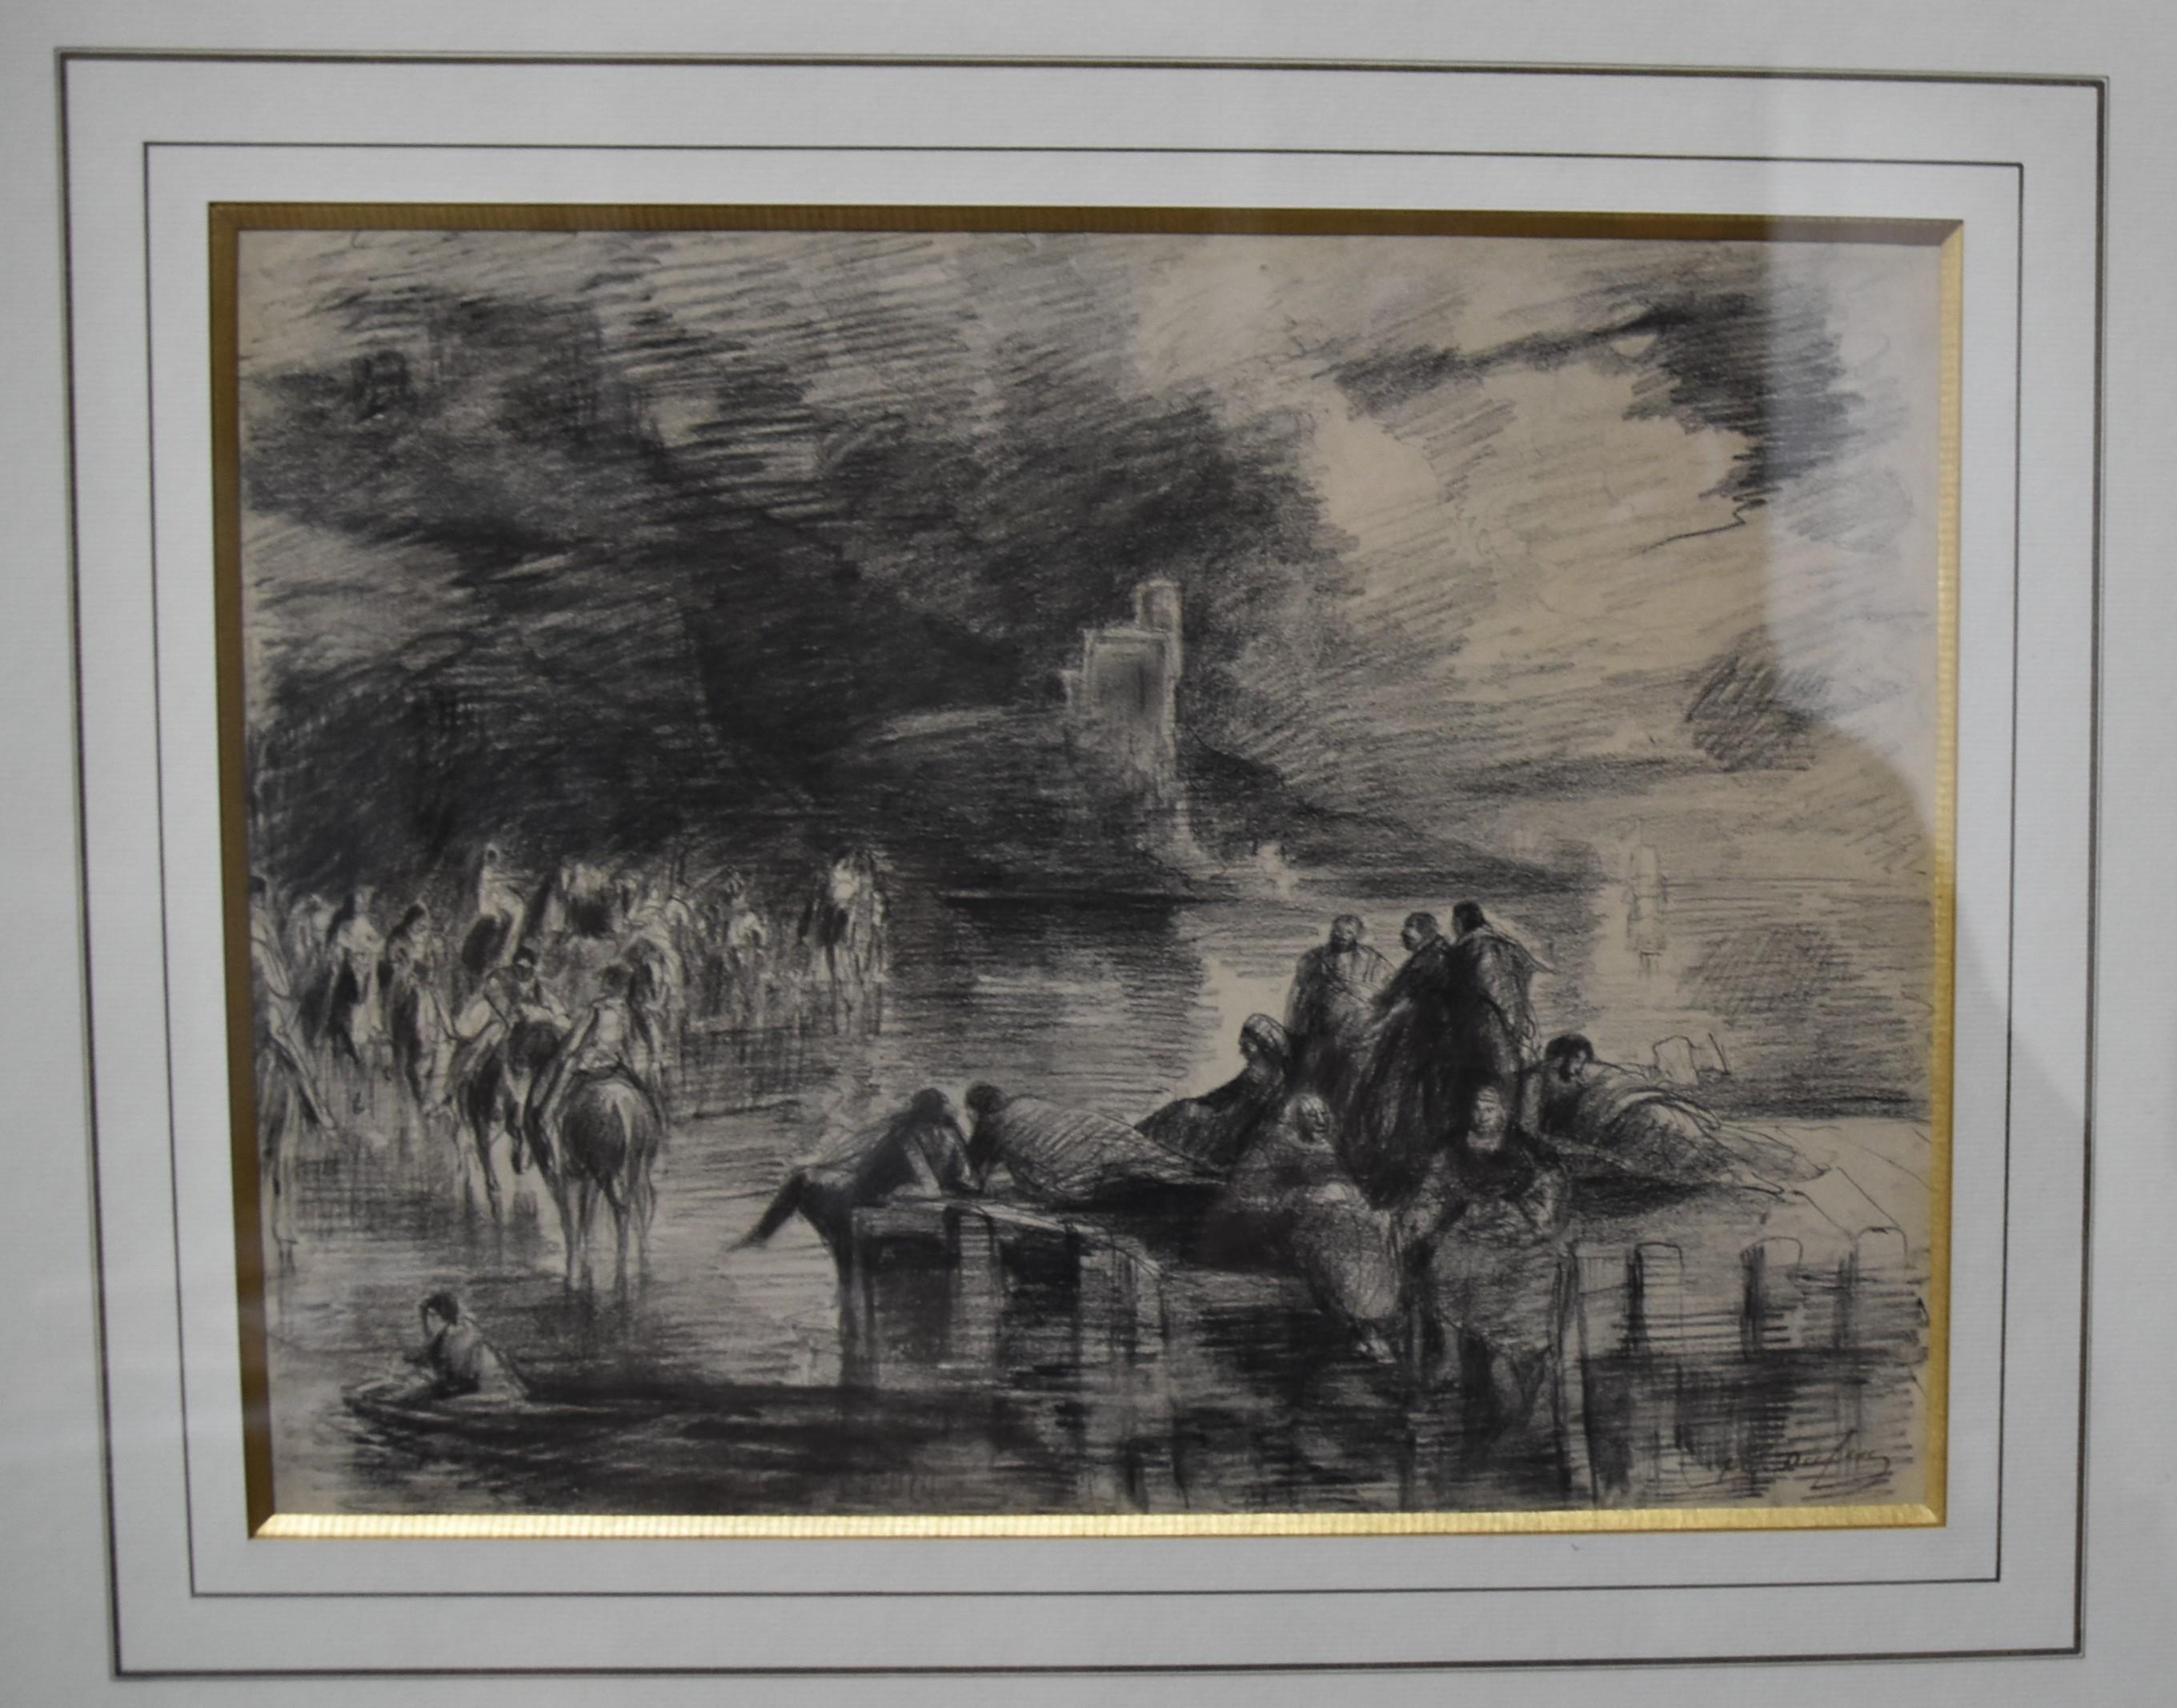 Edouard Dufeu (1836-1900)  
Eine fantastische Szene an einem See
Zeichenkohle auf Papier
Signiert unten rechts
23 x 30,5 cm
Gerahmt unter Glas: 42,5 x 51 cm

Diese phantastische Szene, deren Gegenstand ein Geheimnis bleibt, offenbart einen Aspekt